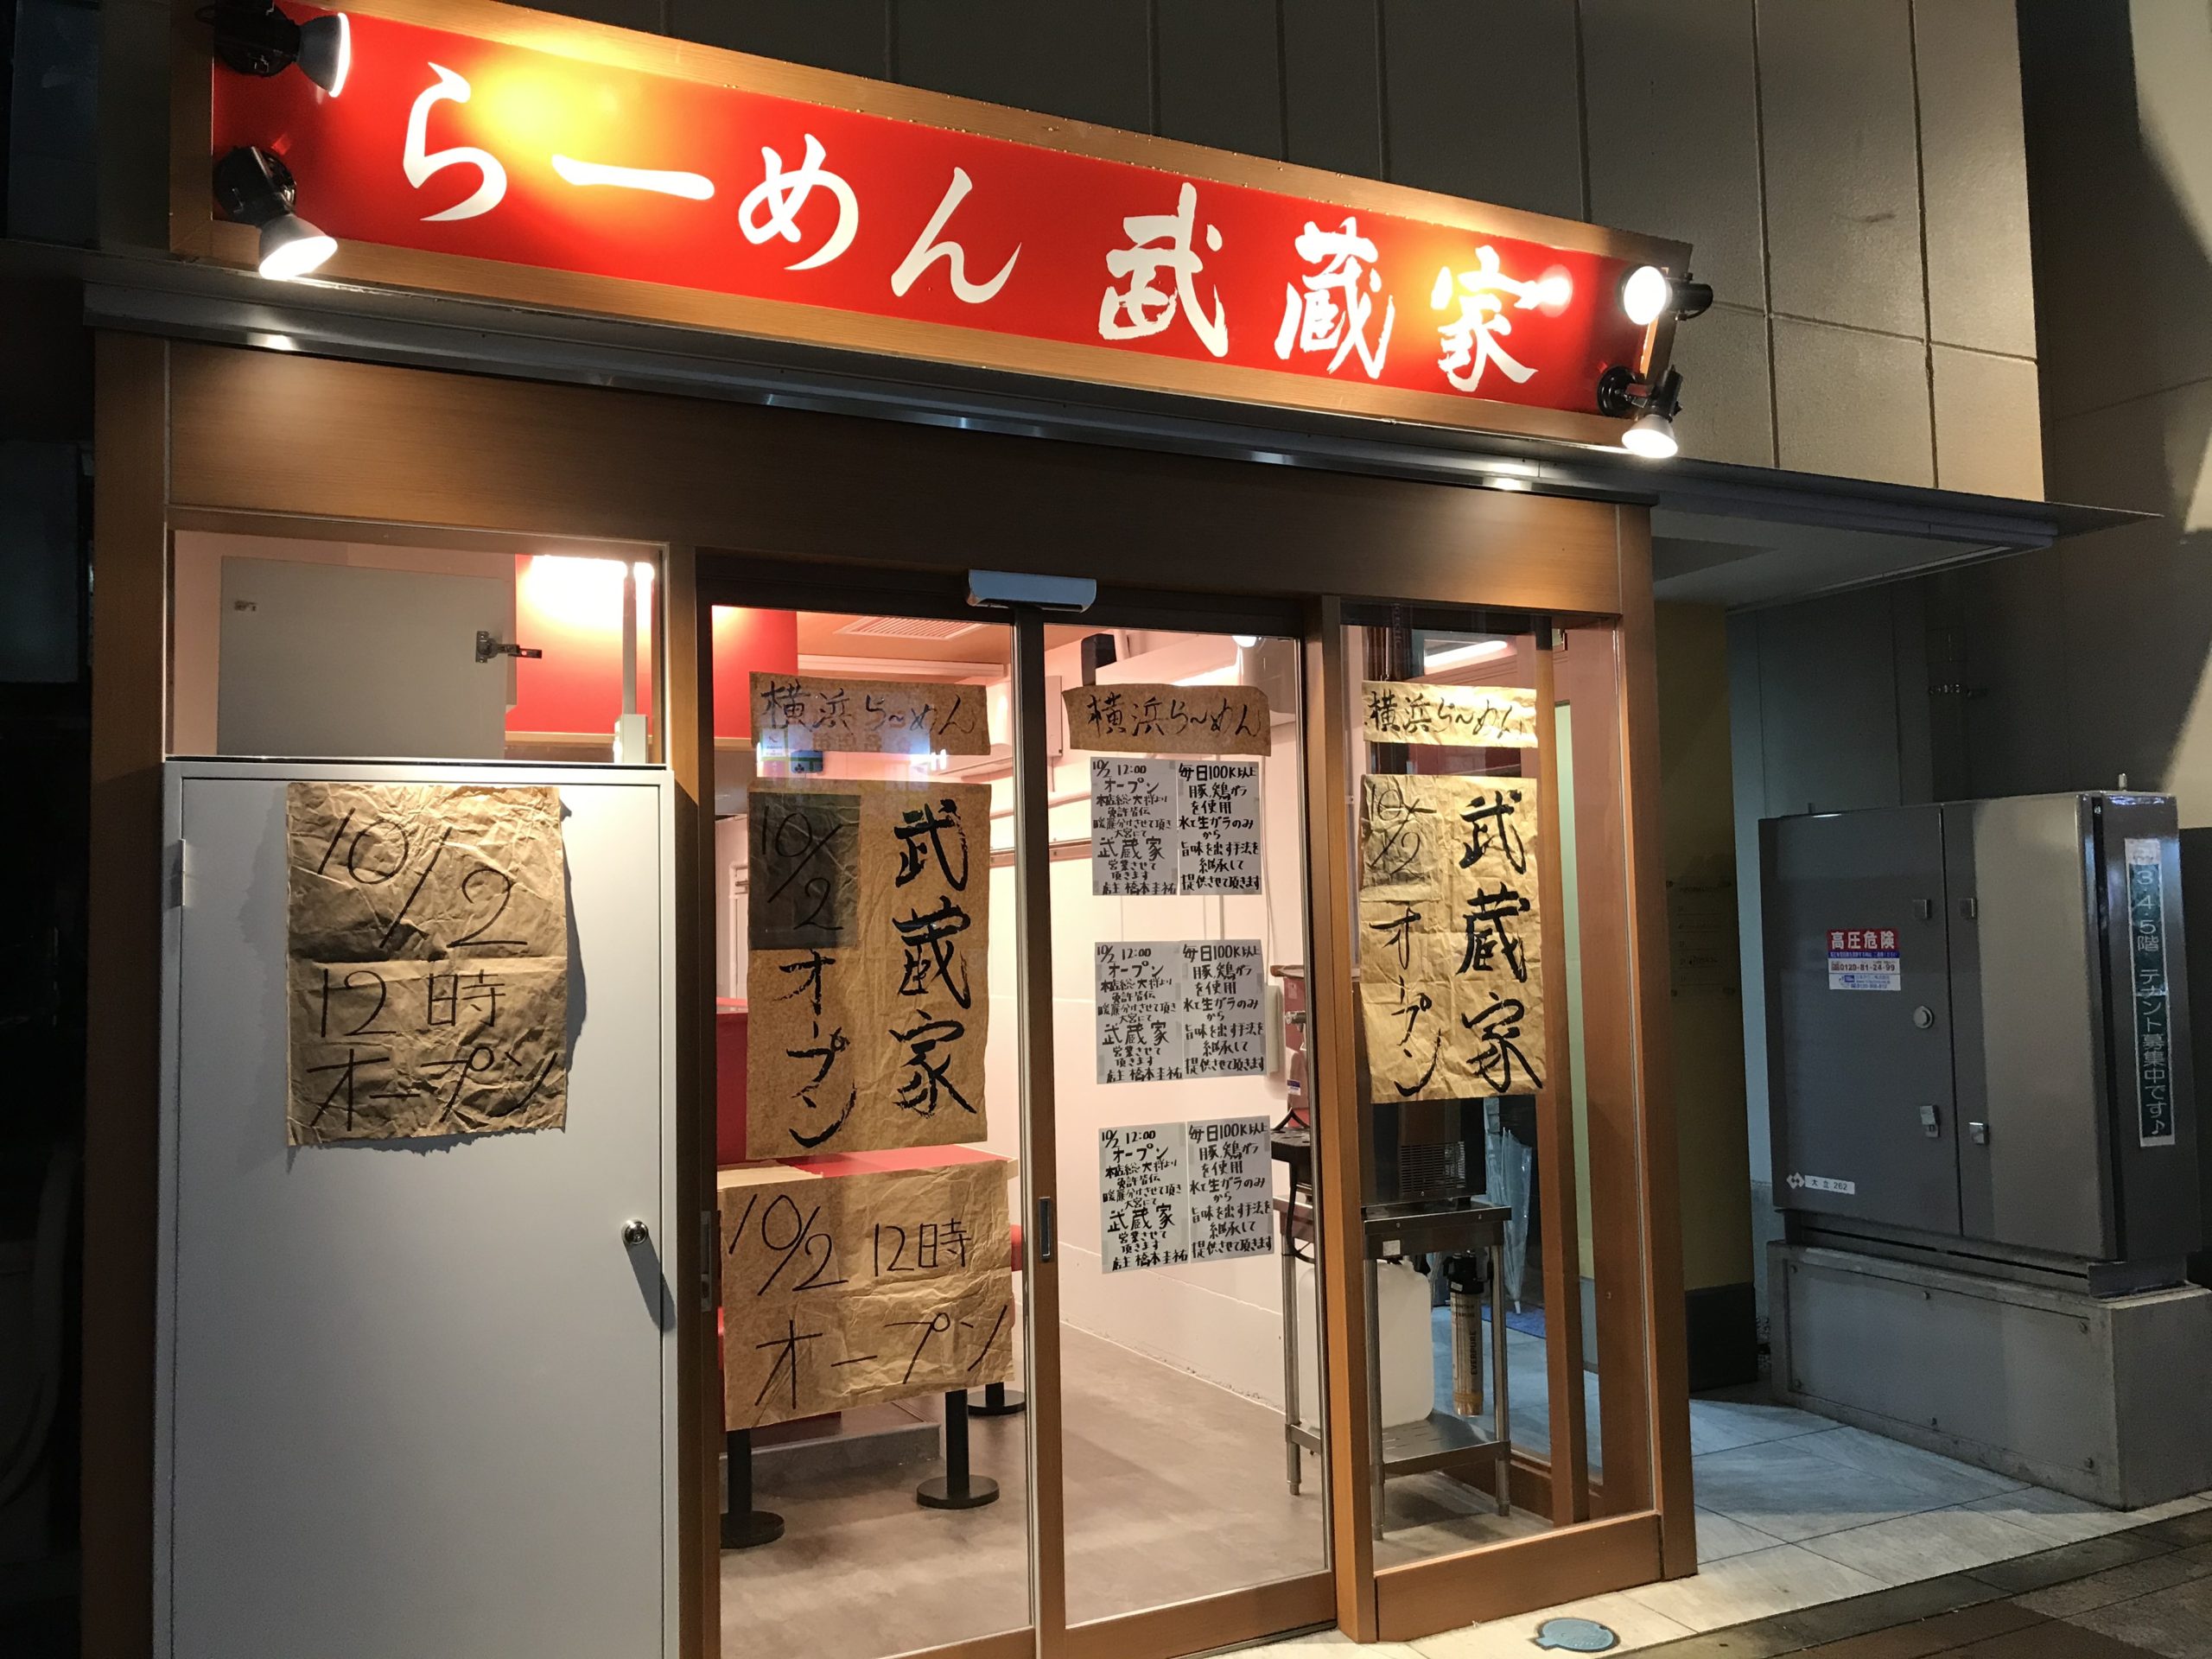 大宮に 武蔵家 が10月2日オープン 横浜家系ラーメンの人気店 場所は階段降りて秒の好立地